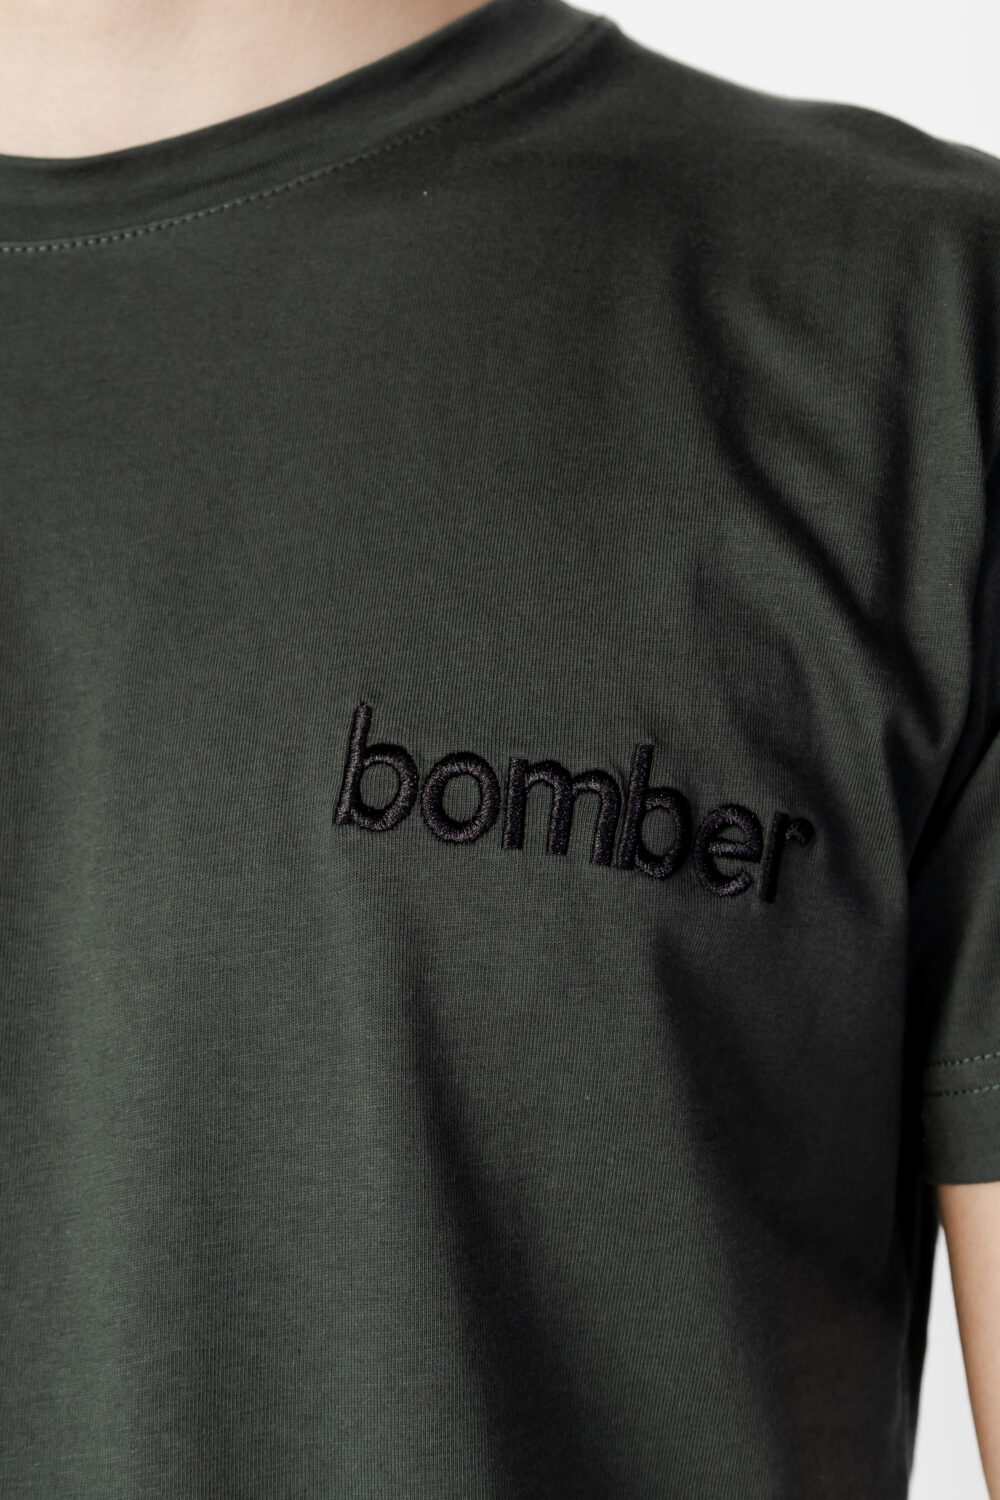 T-shirt The Bomber logo Verde Oliva - Foto 2